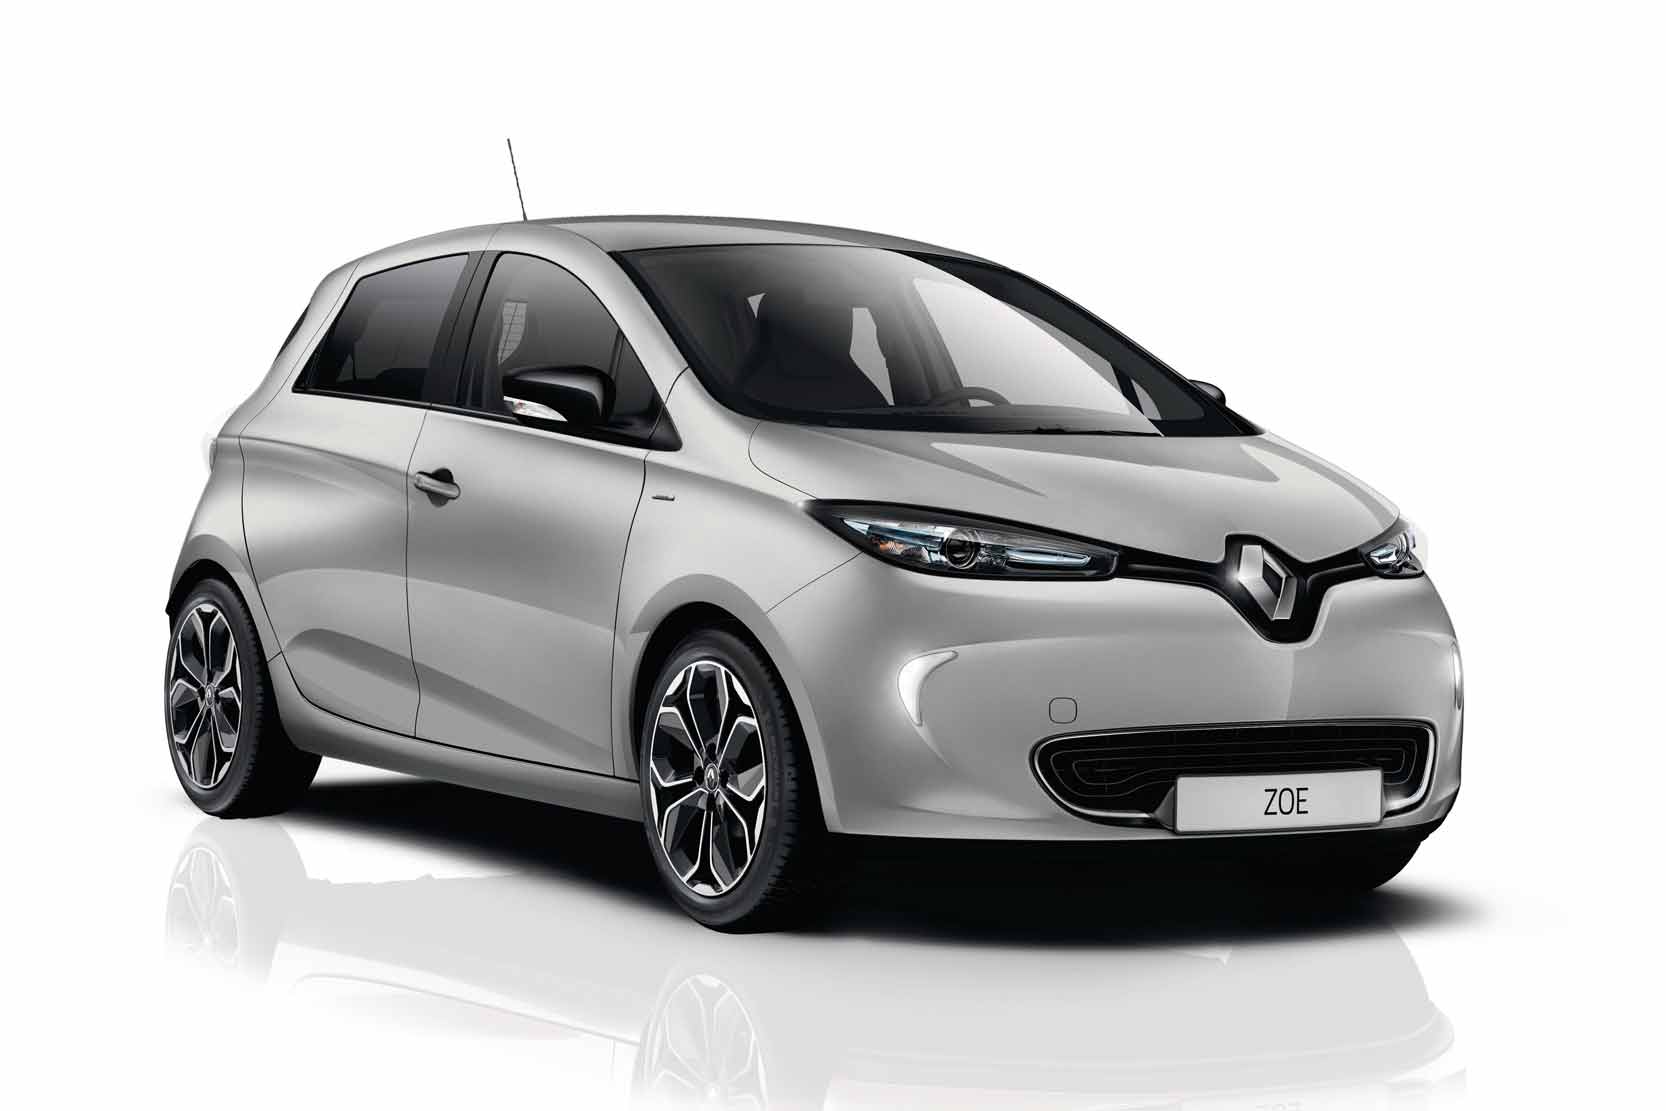 Image principale de l'actu: Renault zoe iconic une nouvelle serie limitee 